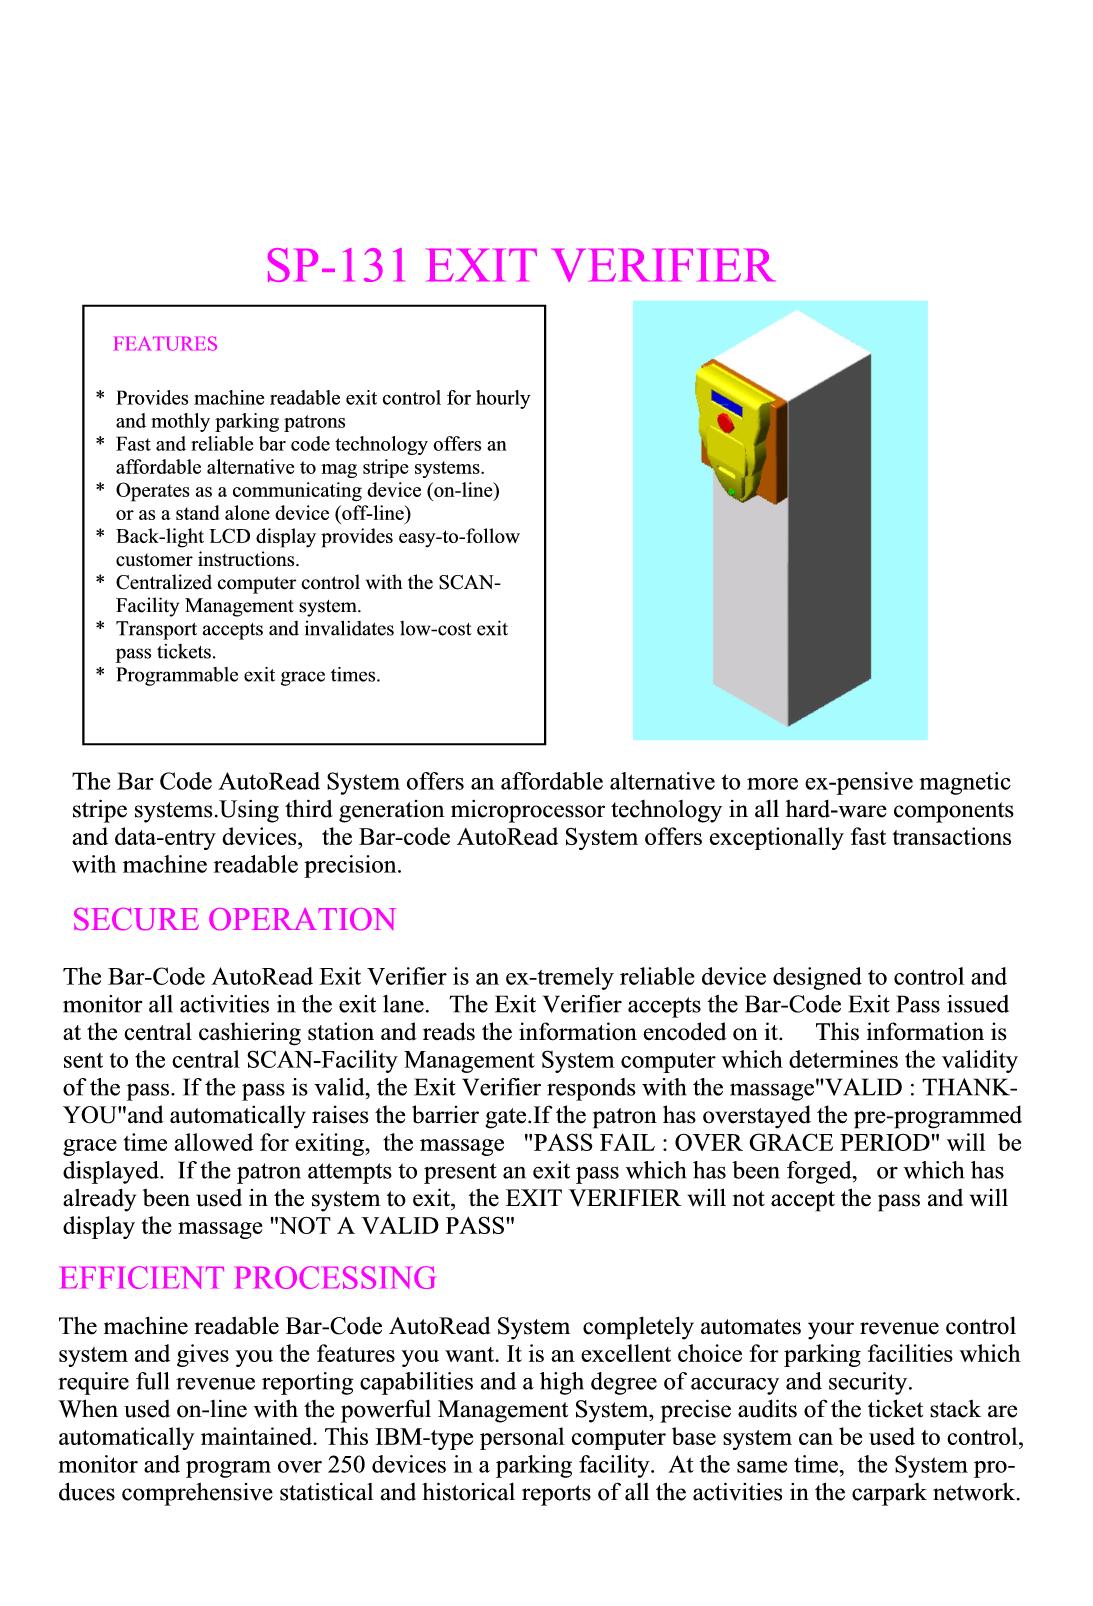 SP-131 Exit Verifier